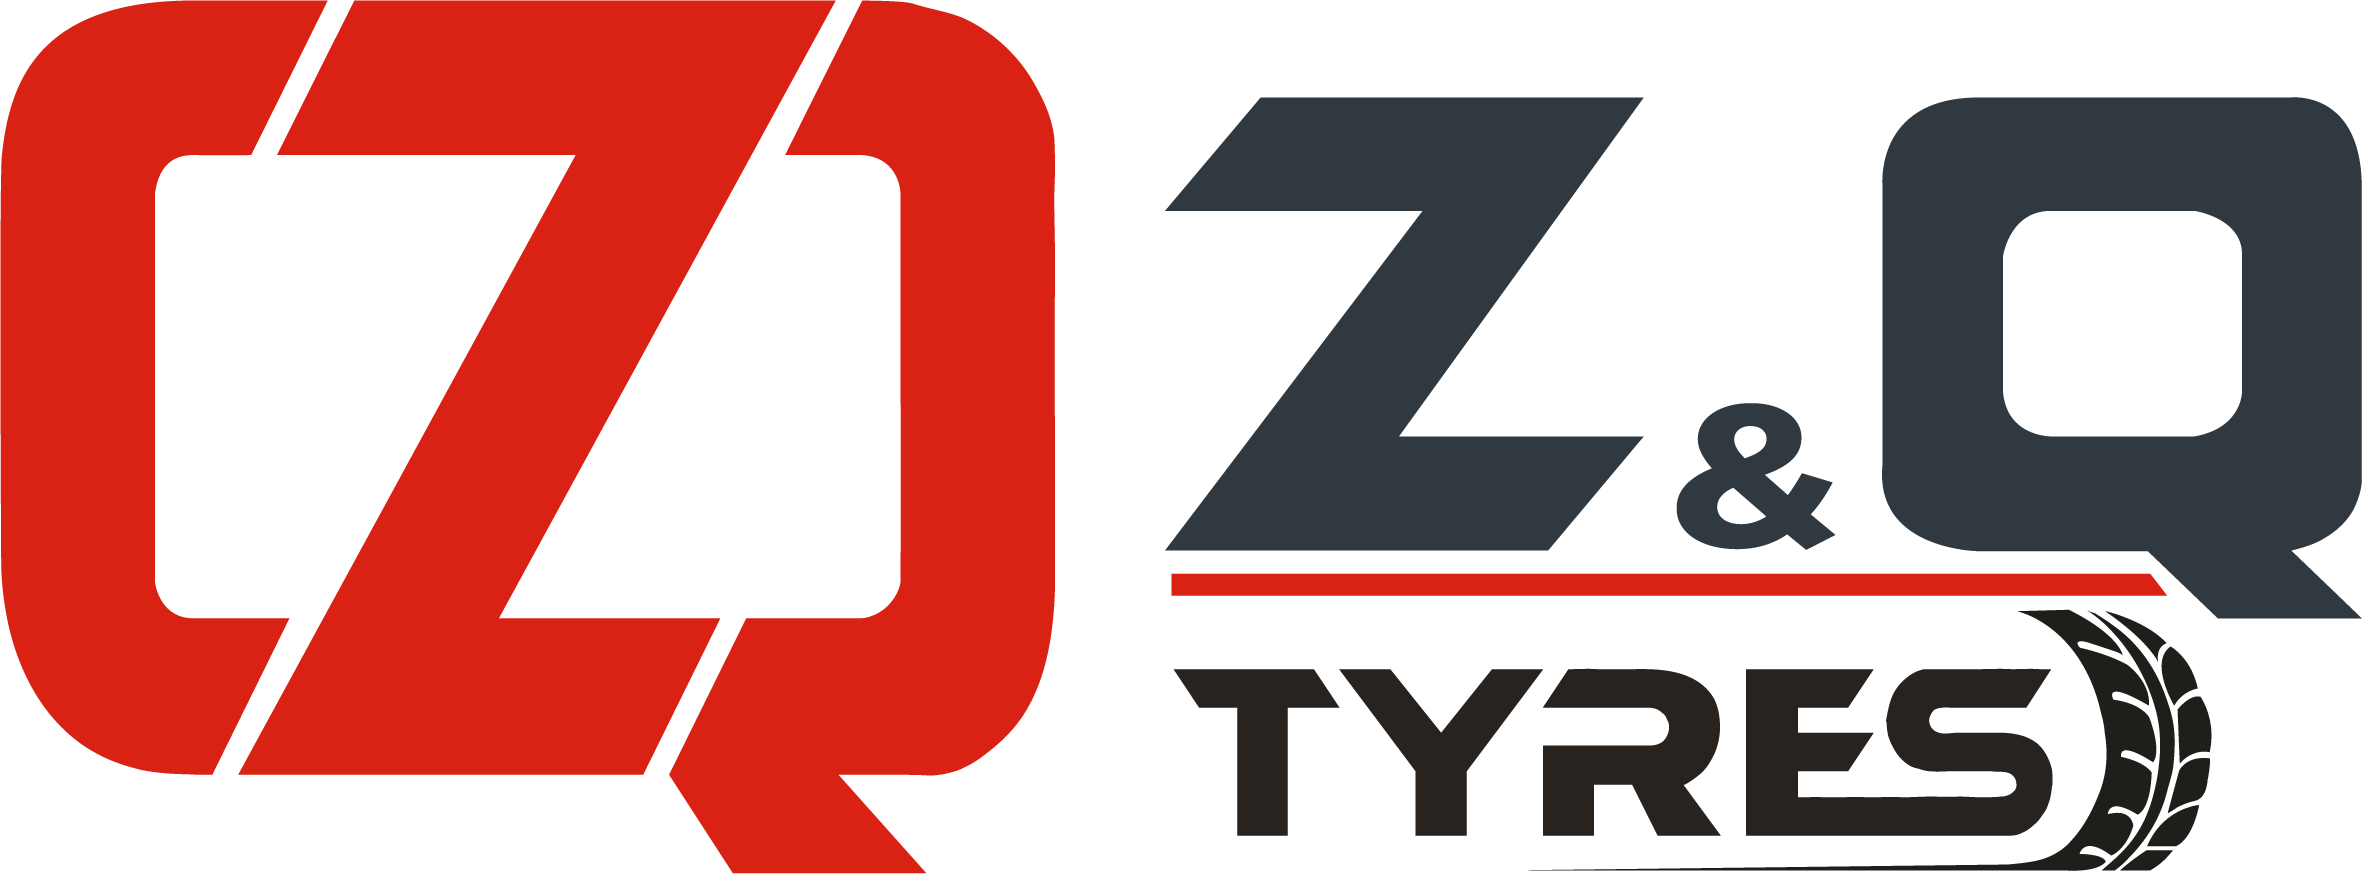 ZQ TYRES | ZQ MONTANA Производитель сельскохозяйственных шин | ZQ WARRIOR Производитель шин для вилочных погрузчиков | ZQ WOLF Горячее и холодное восстановление протектора | ATIRE & MAXAM Турция Дистрибьютор шин для вилочных погрузчиков и строительной техники 